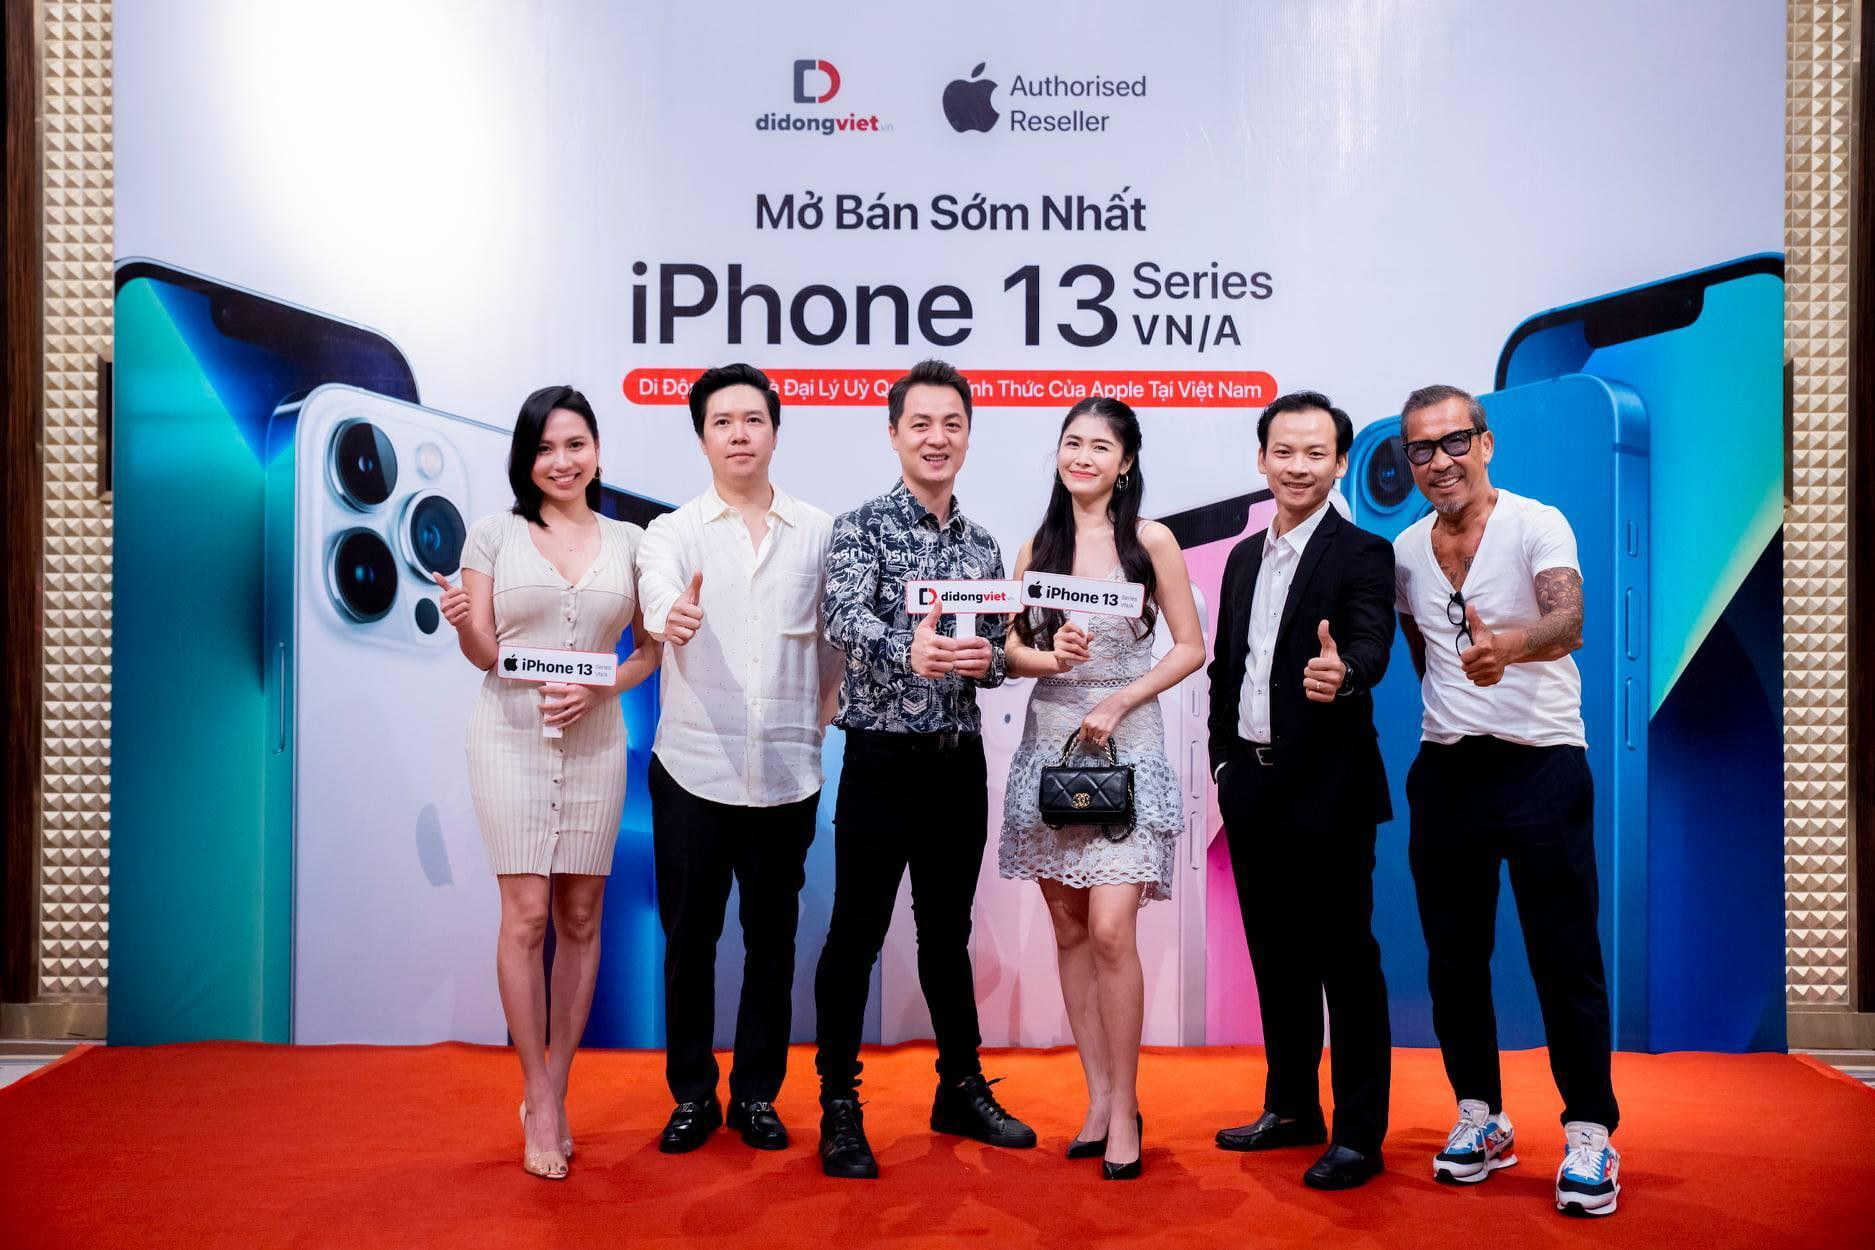 iPhone 13 bắt đầu được bán tại Hà Nội, cửa hàng giao ngay trong đêm - 1